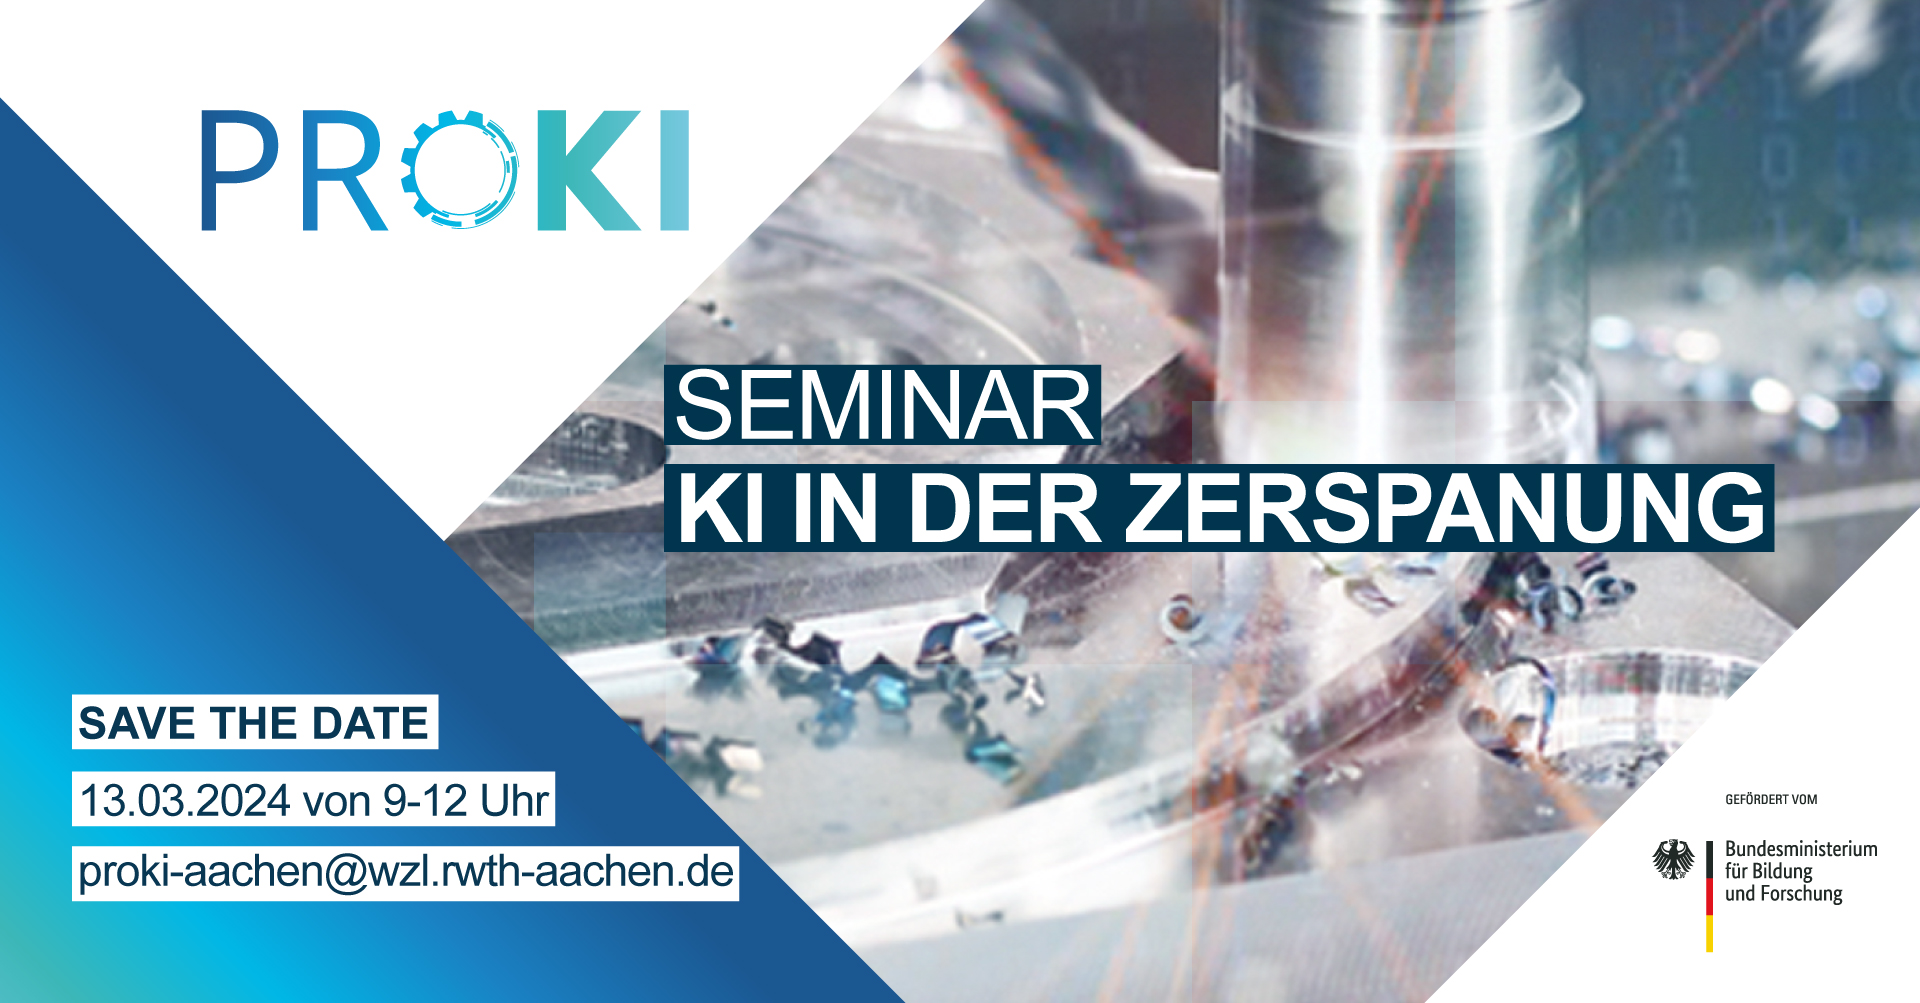 ProKI_Aachen_Seminar_Zerspanung